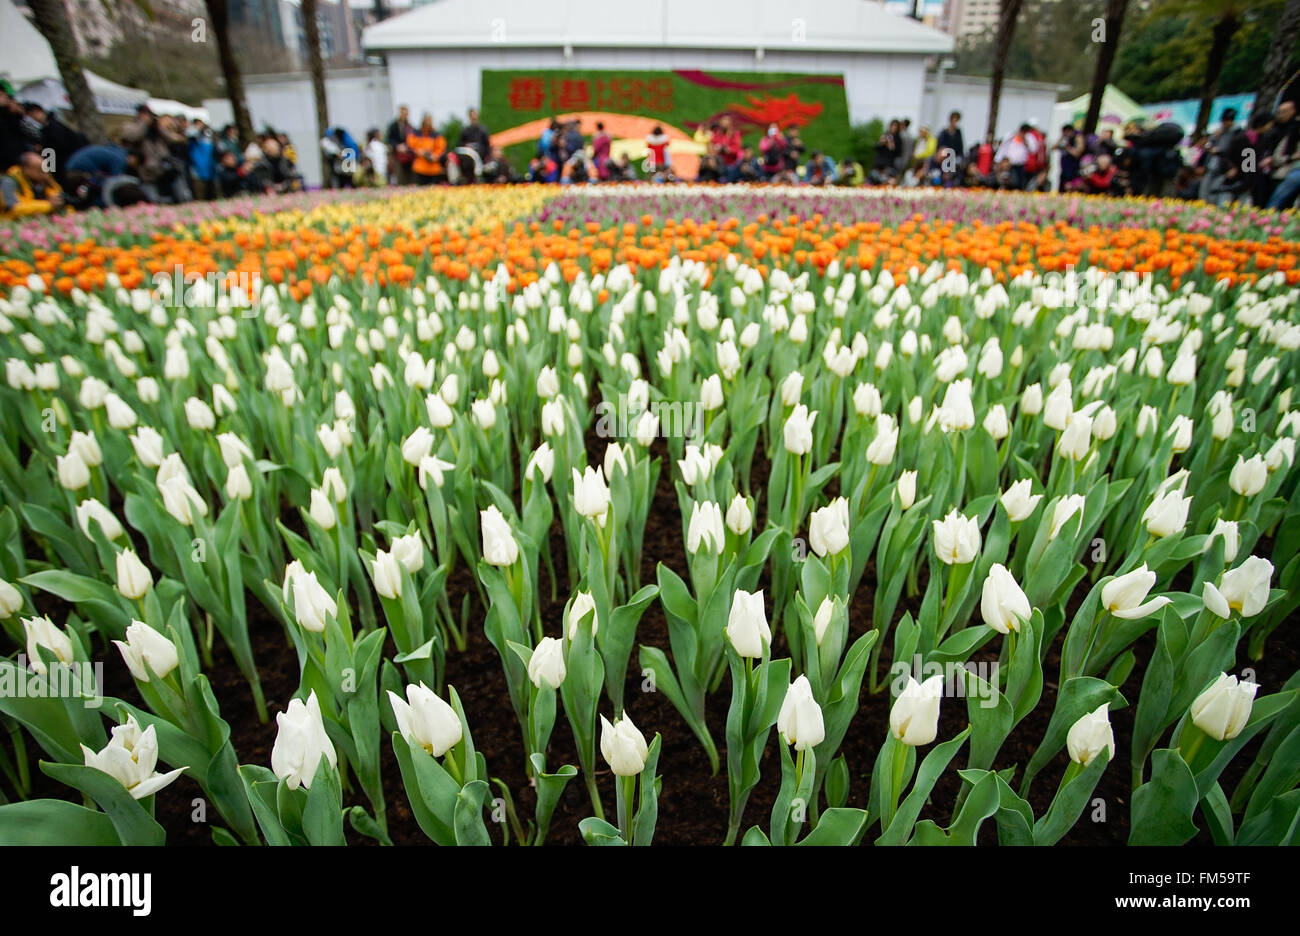 Hong Kong, China. 11 Mar, 2016. Foto tomada el 11 de marzo de 2016 muestra las flores de Hong Kong, exhibición de flores en el parque Victoria de Hong Kong, sur de China, 11 de marzo de 2016. © Ng Wing Kin/Xinhua/Alamy Live News Foto de stock